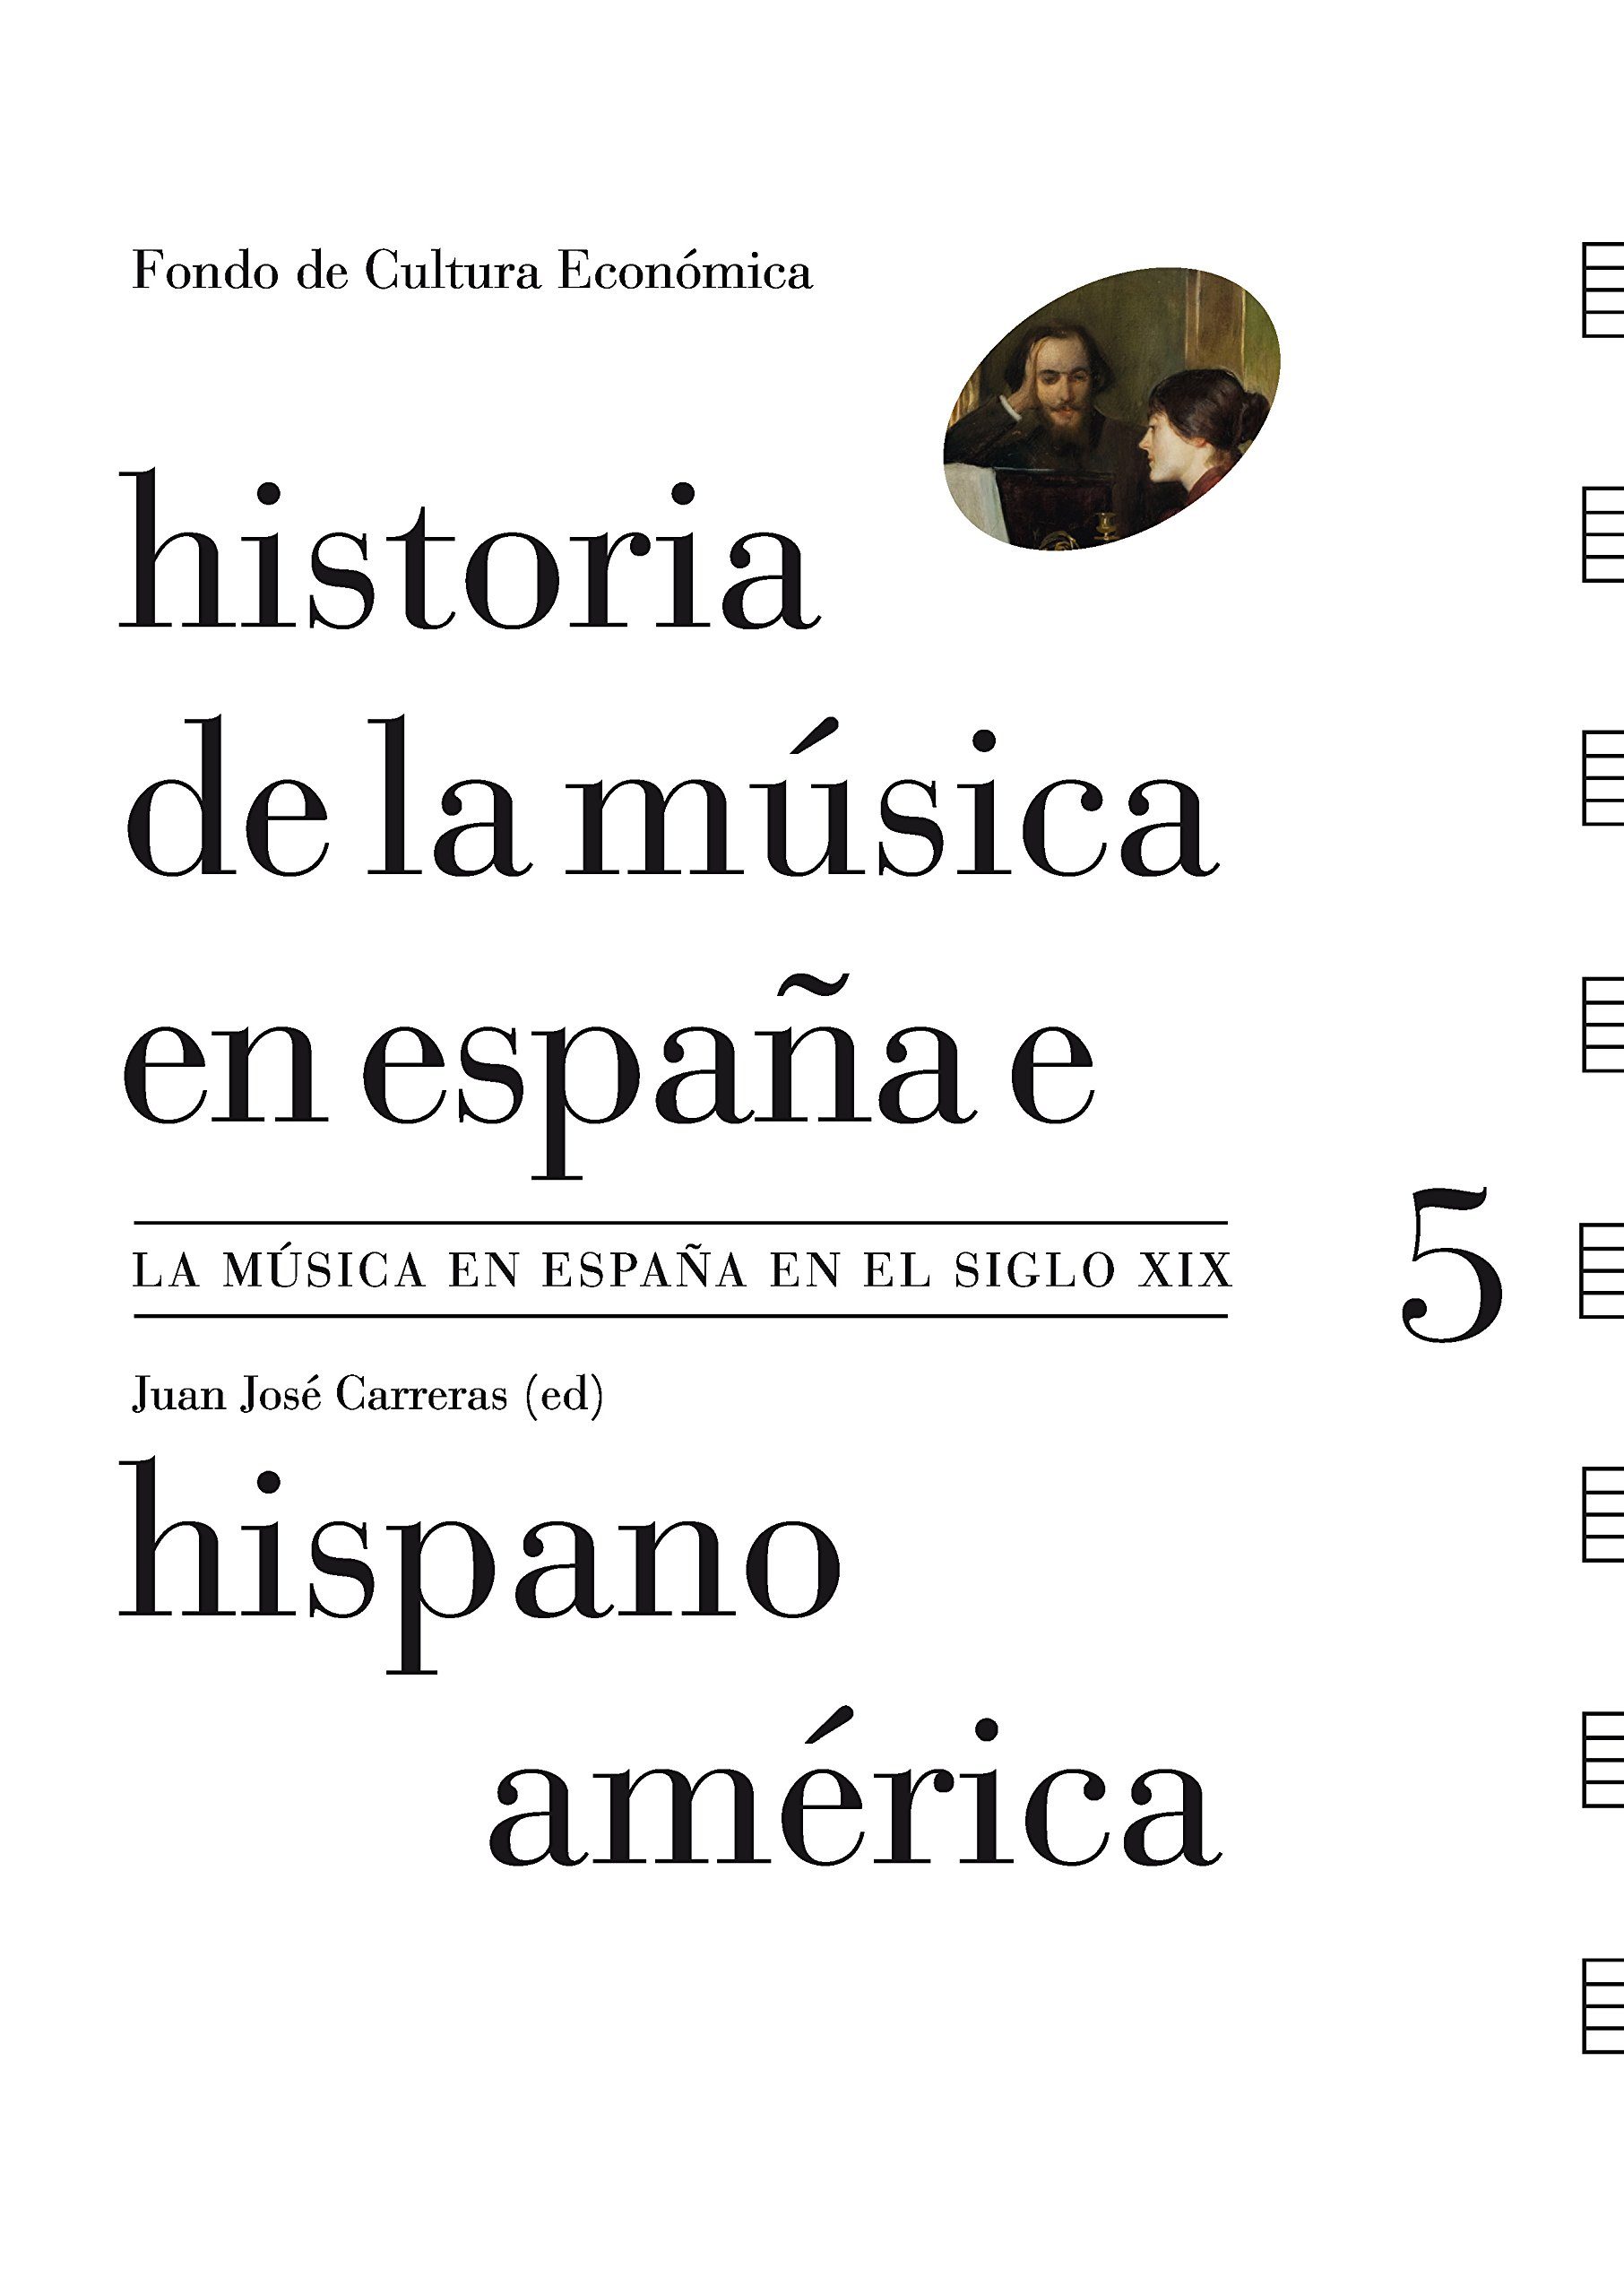 Portada del libro HISTORIA DE LA MUSICA EN ESPAÑA E HISPANOAMÉRICA.  Volumen 5: La Música en España en el siglo XIX